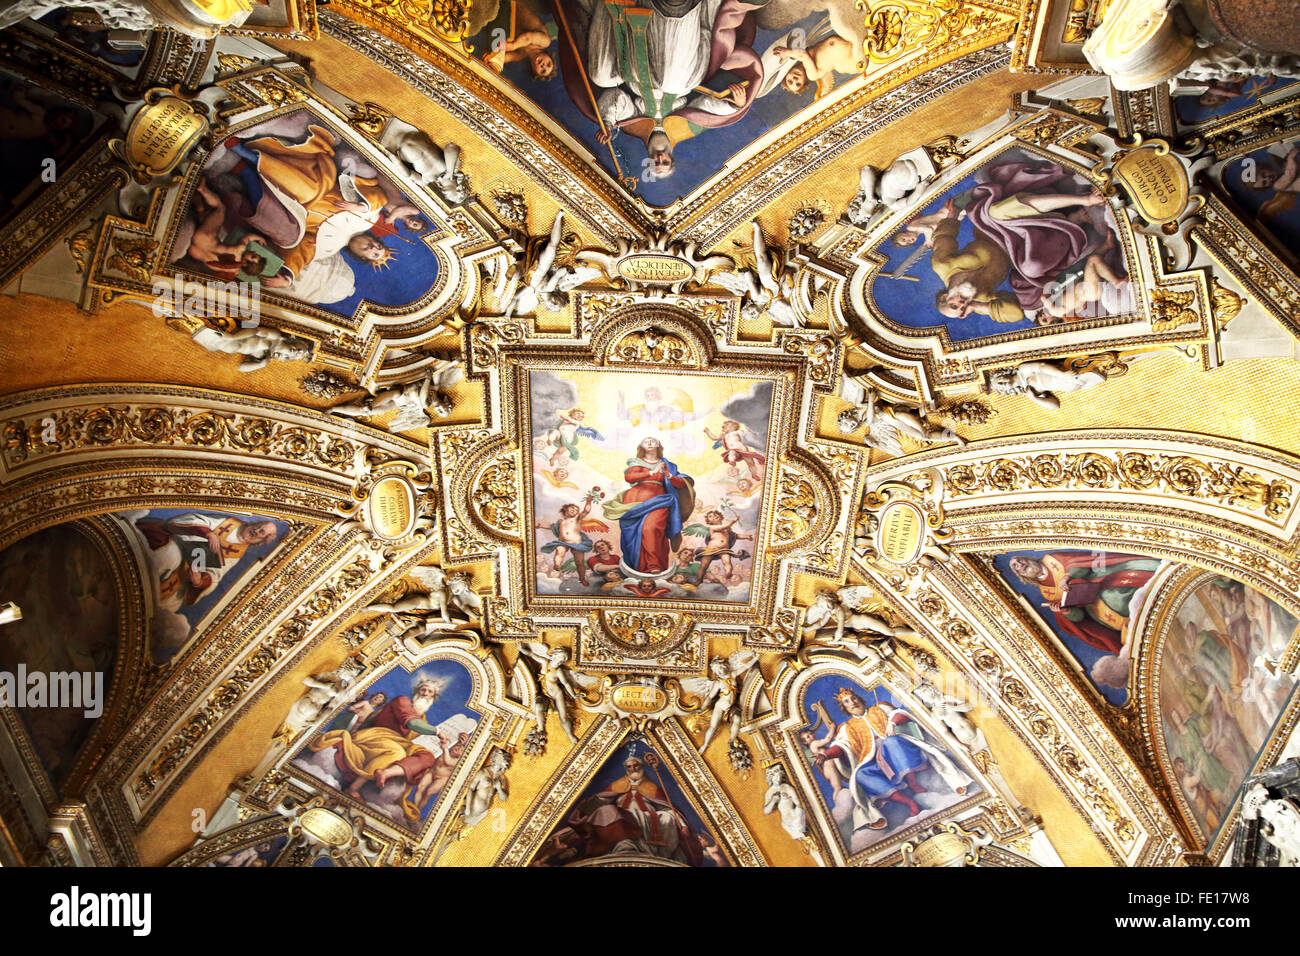 L'ornato soffitto della Basilica di Santa Maria Maggiore in Roma. Foto Stock